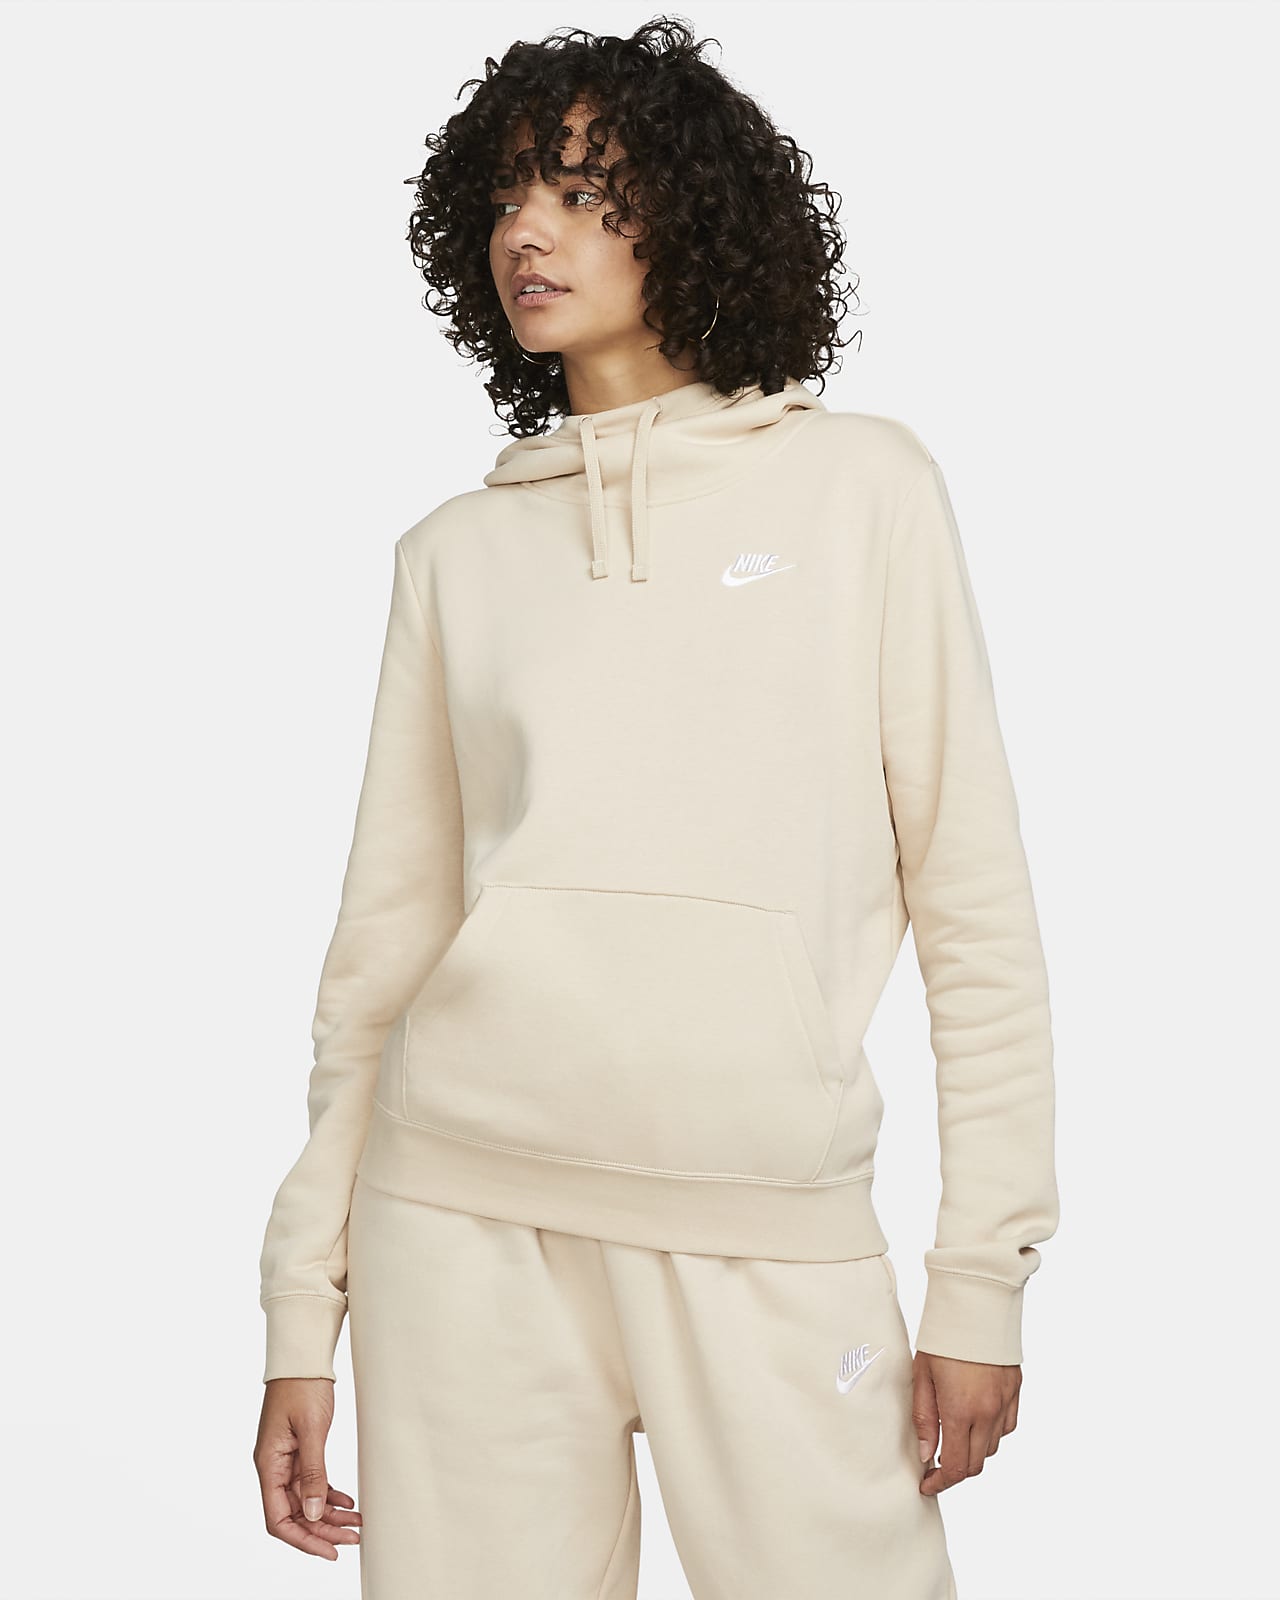 Women's Nike Sportswear Essential Fleece Mock Neck Sweatshirt